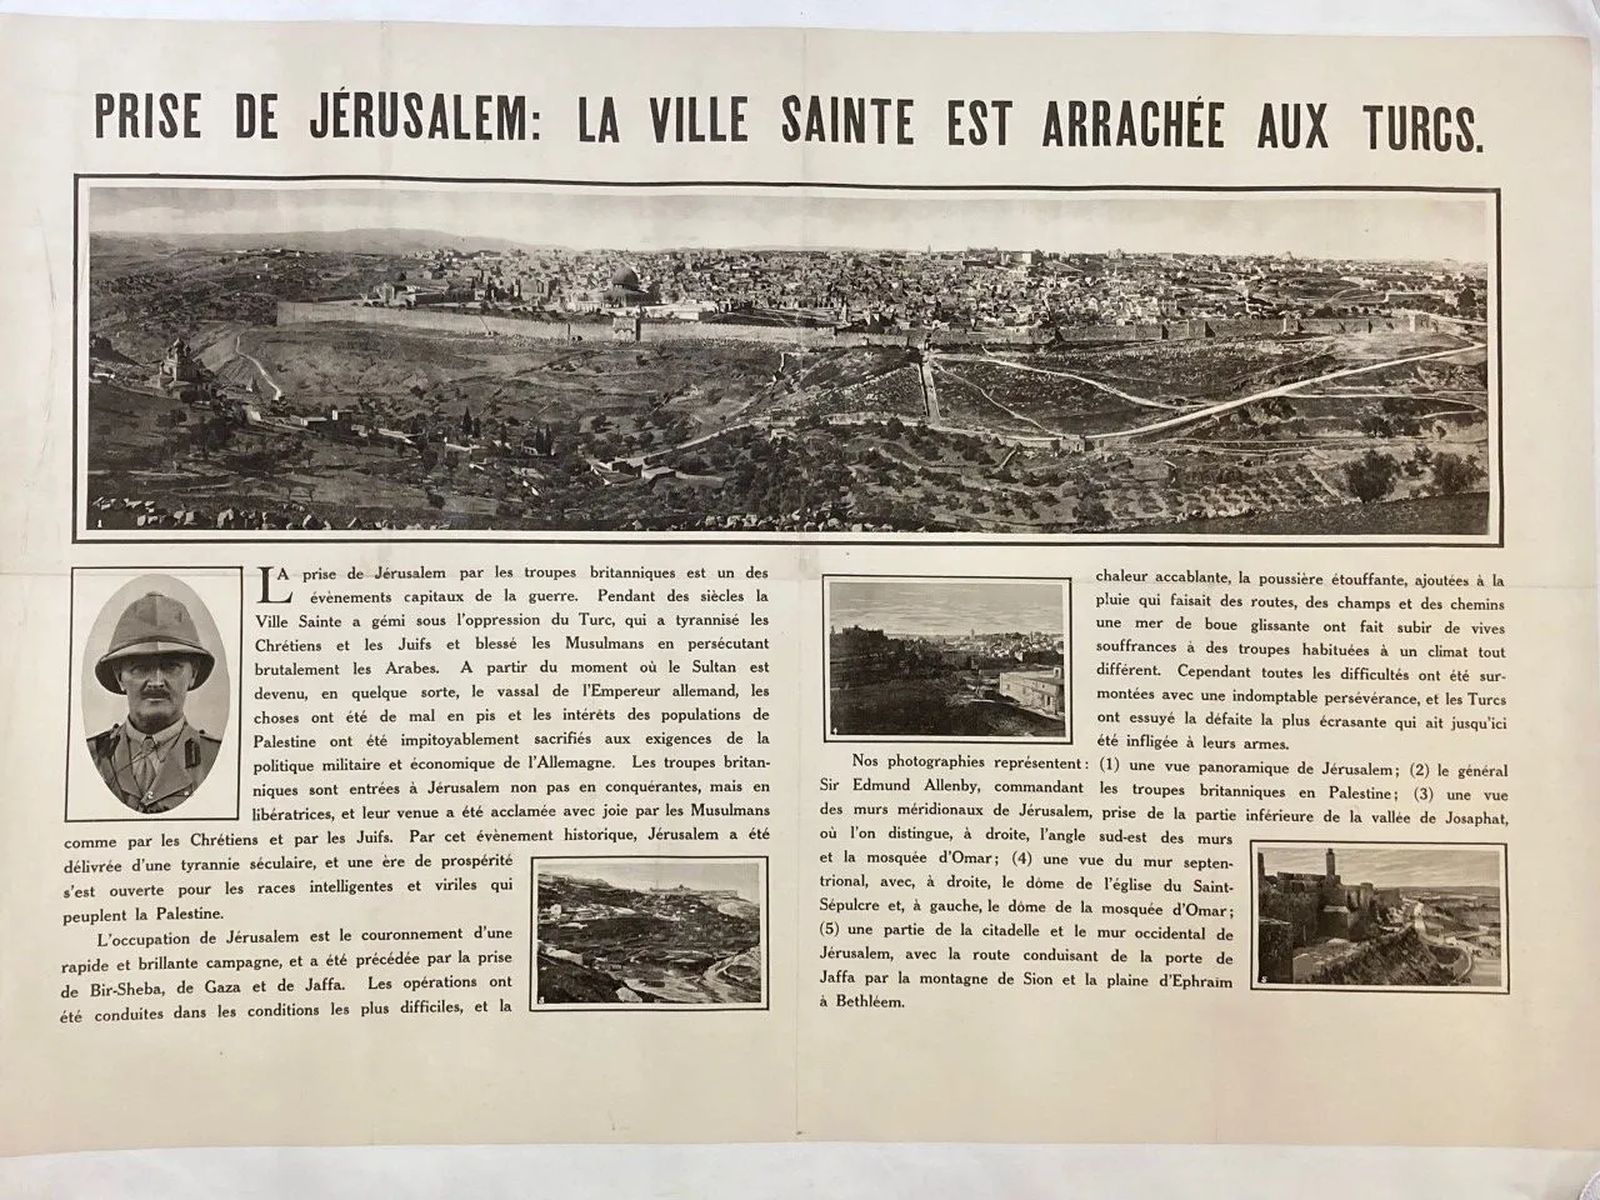 Null 耶路撒冷的法国海报



1917年后出版的大型帆布海报，描述了耶路撒冷城和解放者艾伦比将军。



以色列建国之初的宣传文本







85x5&hellip;